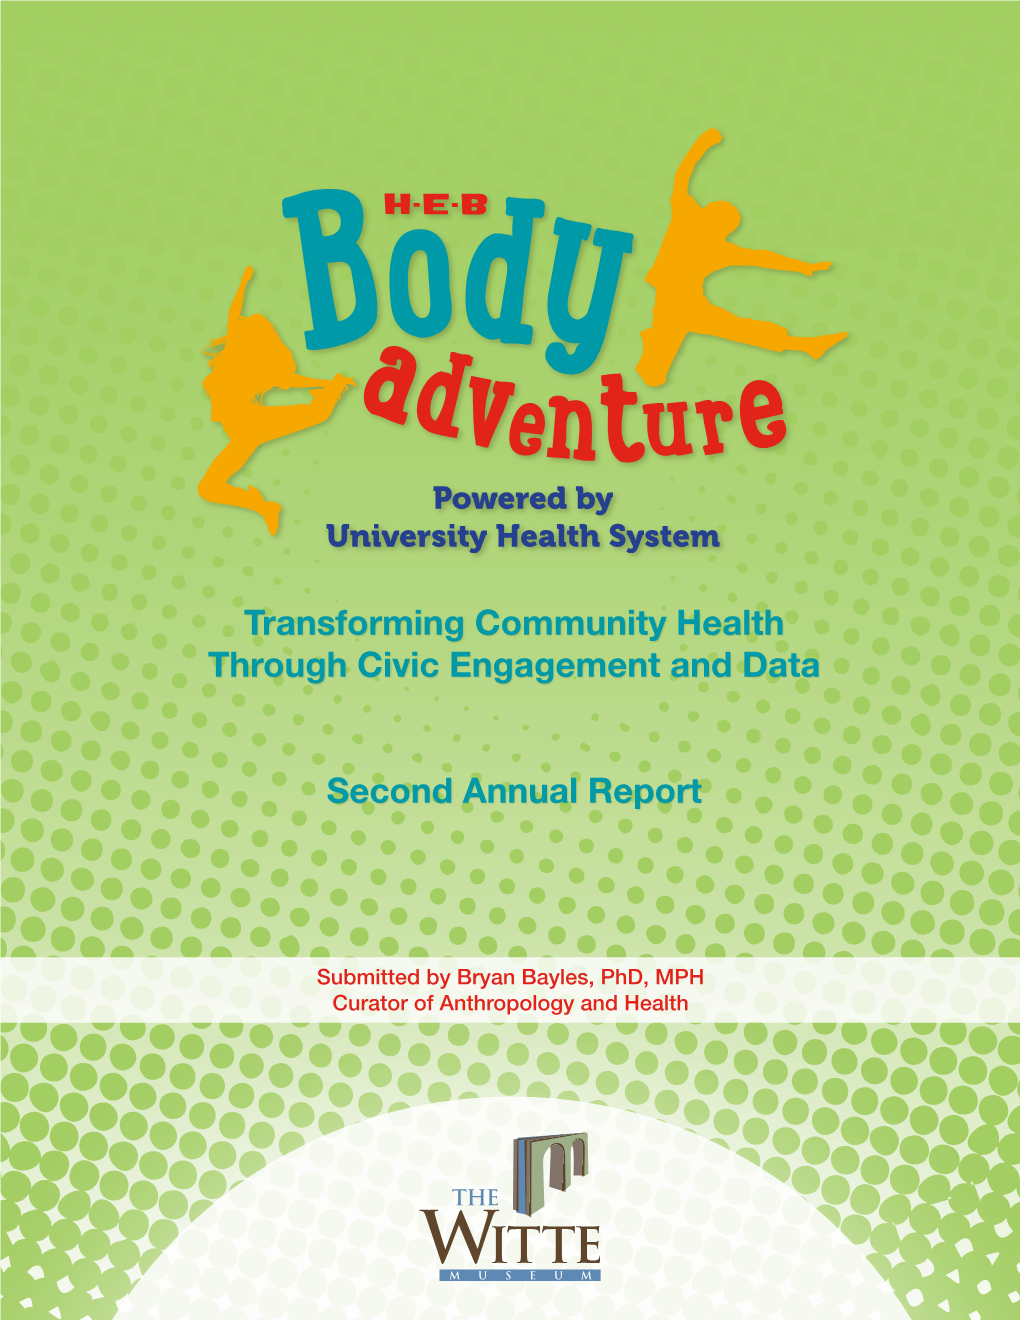 H-E-B Body Adventure Second Annual Report